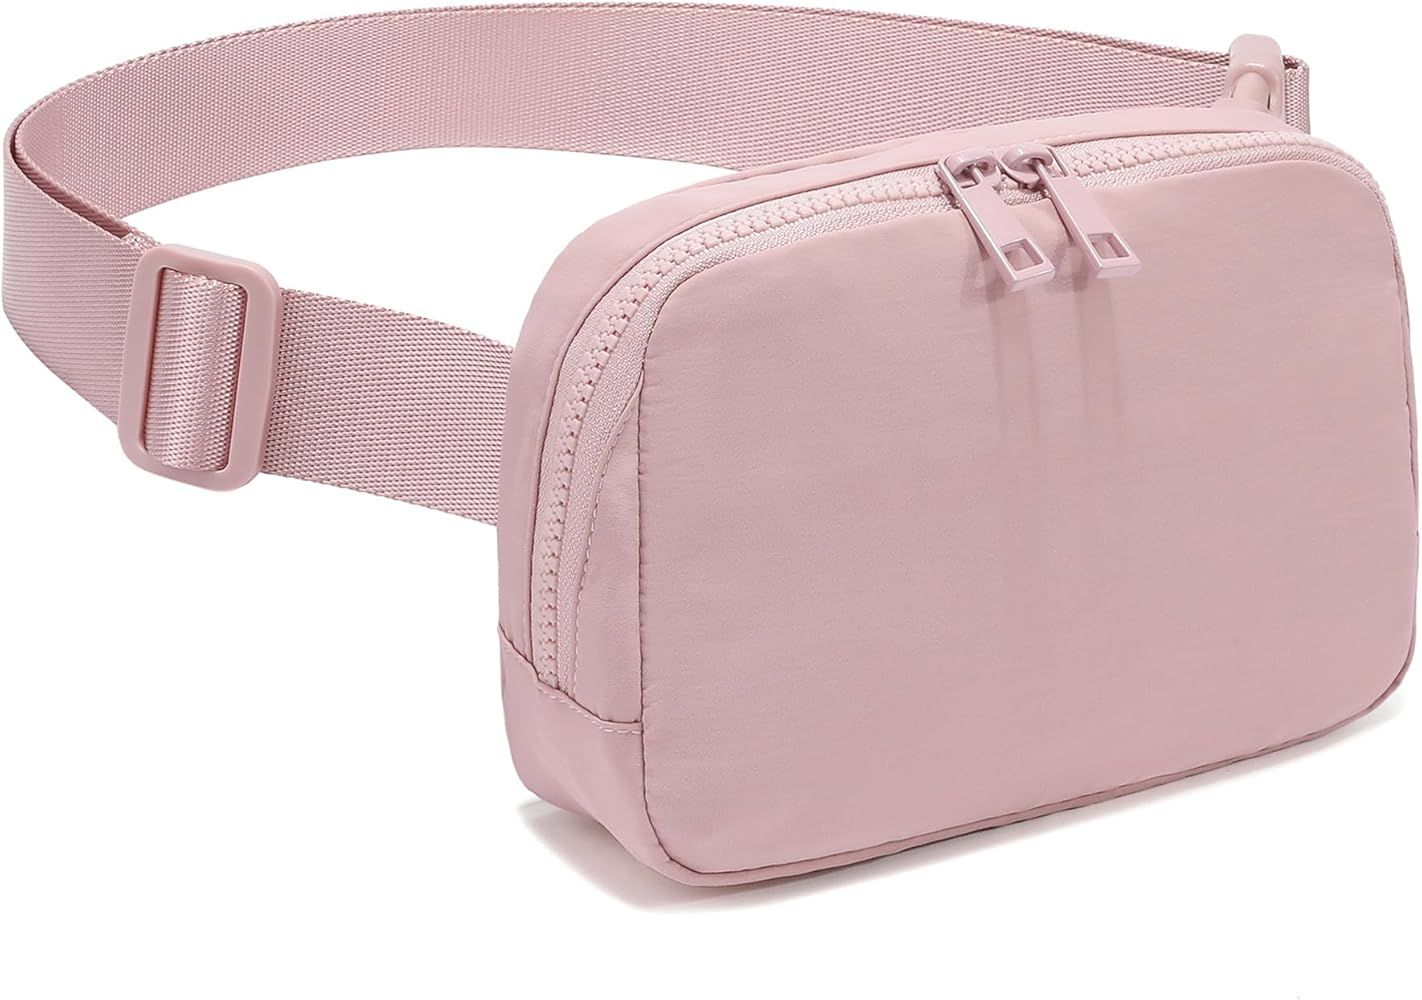 FODOKO Unisex Two-way Zipper Belt Bag | Amazon (US)